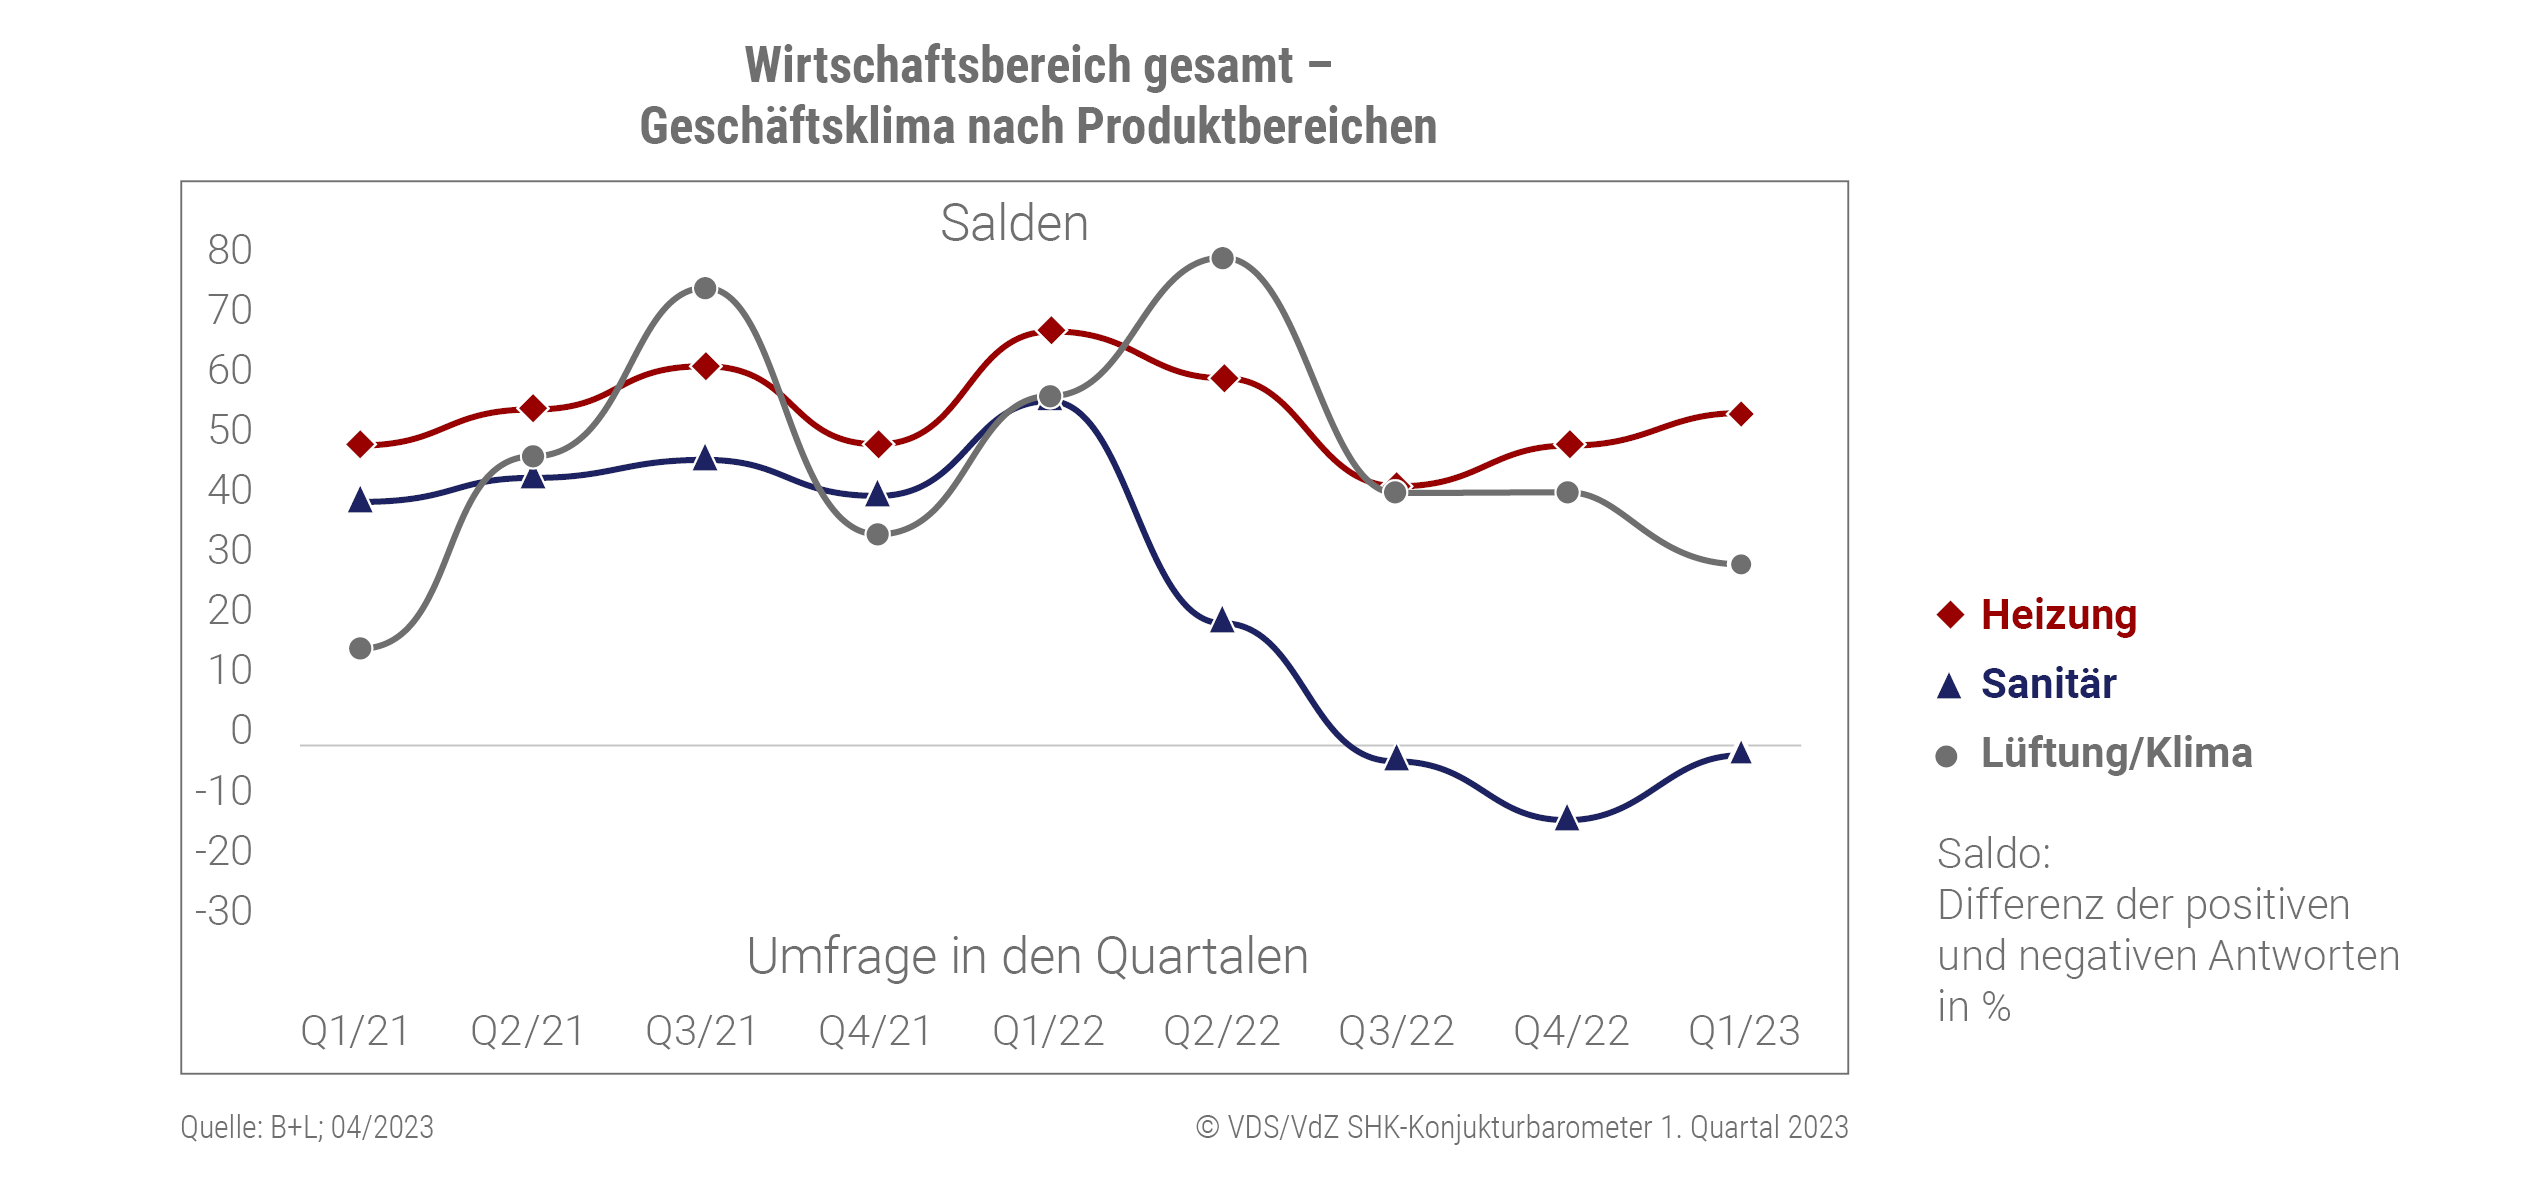 Altersgerecht Umbauen - Förderstart verzögert sich erneut: Grafik zeigt das Konjunkturbarometer von Quartal 01/2021 bis zum Quartal 01/2023.